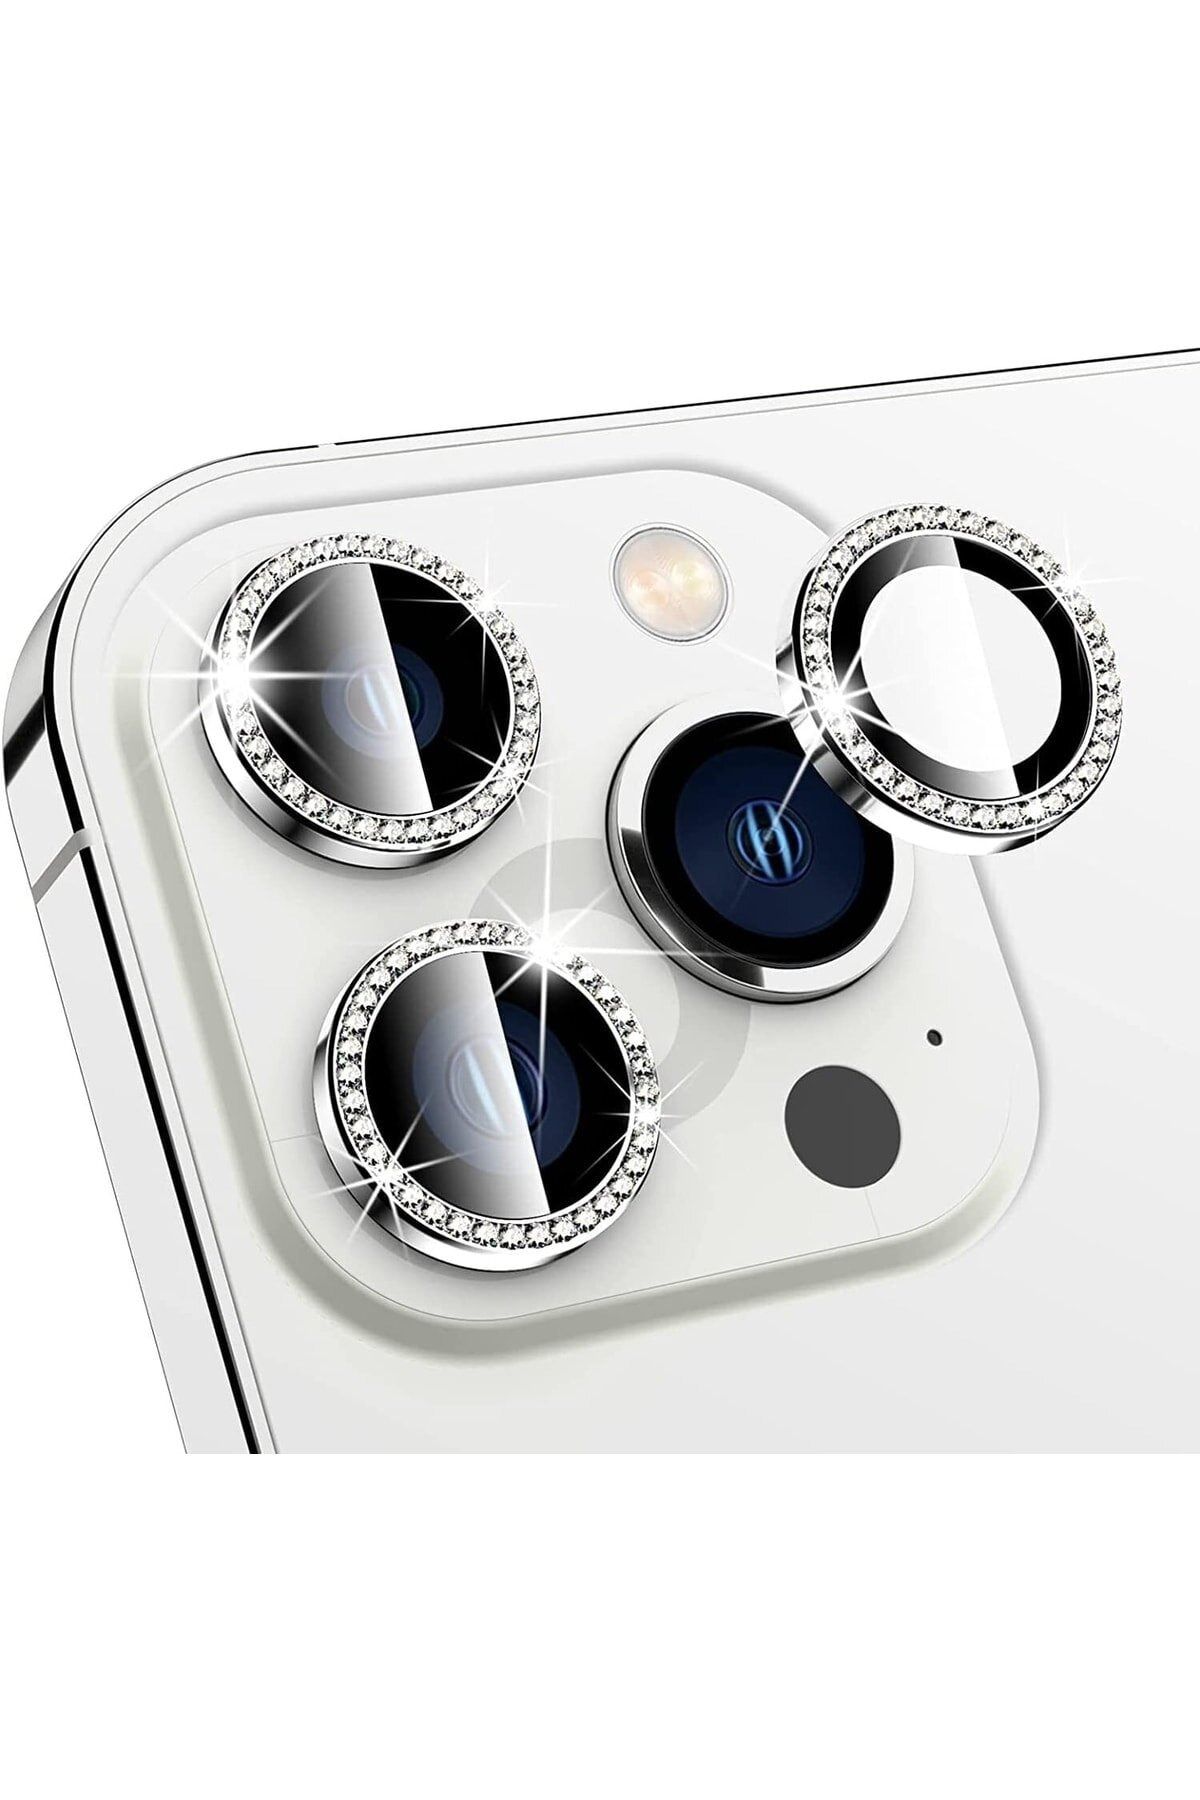 KVK PRİVACY Iphone 11 Pro / Iphone 11 Pro Max /iphone 12 Pro Uyumlu Gümüş Swarovski Taşlı Kamera Lensi Koruyucu